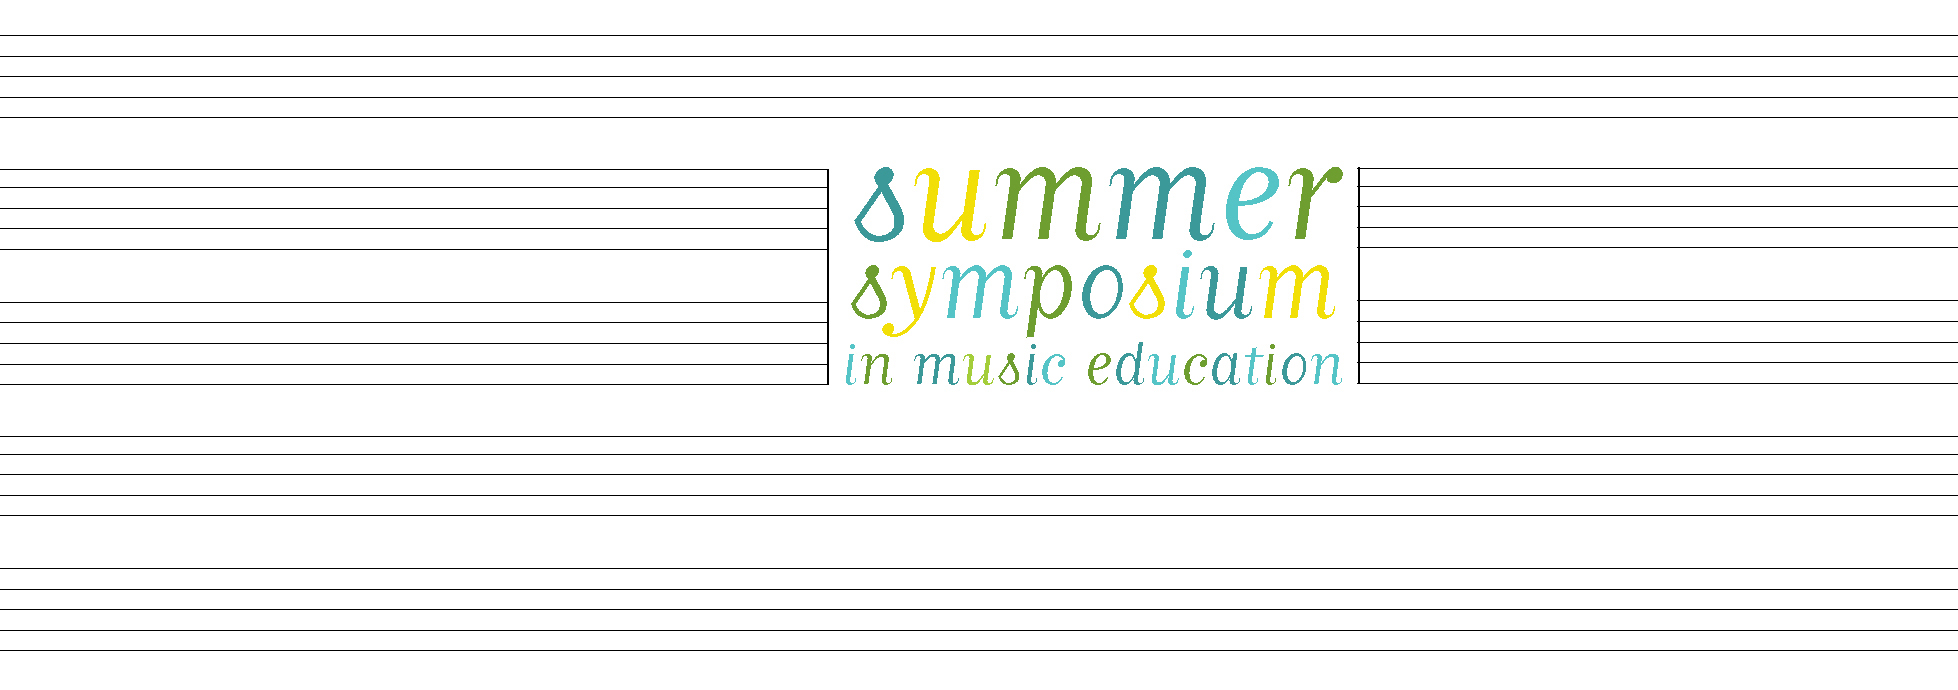 Music Education Symposium